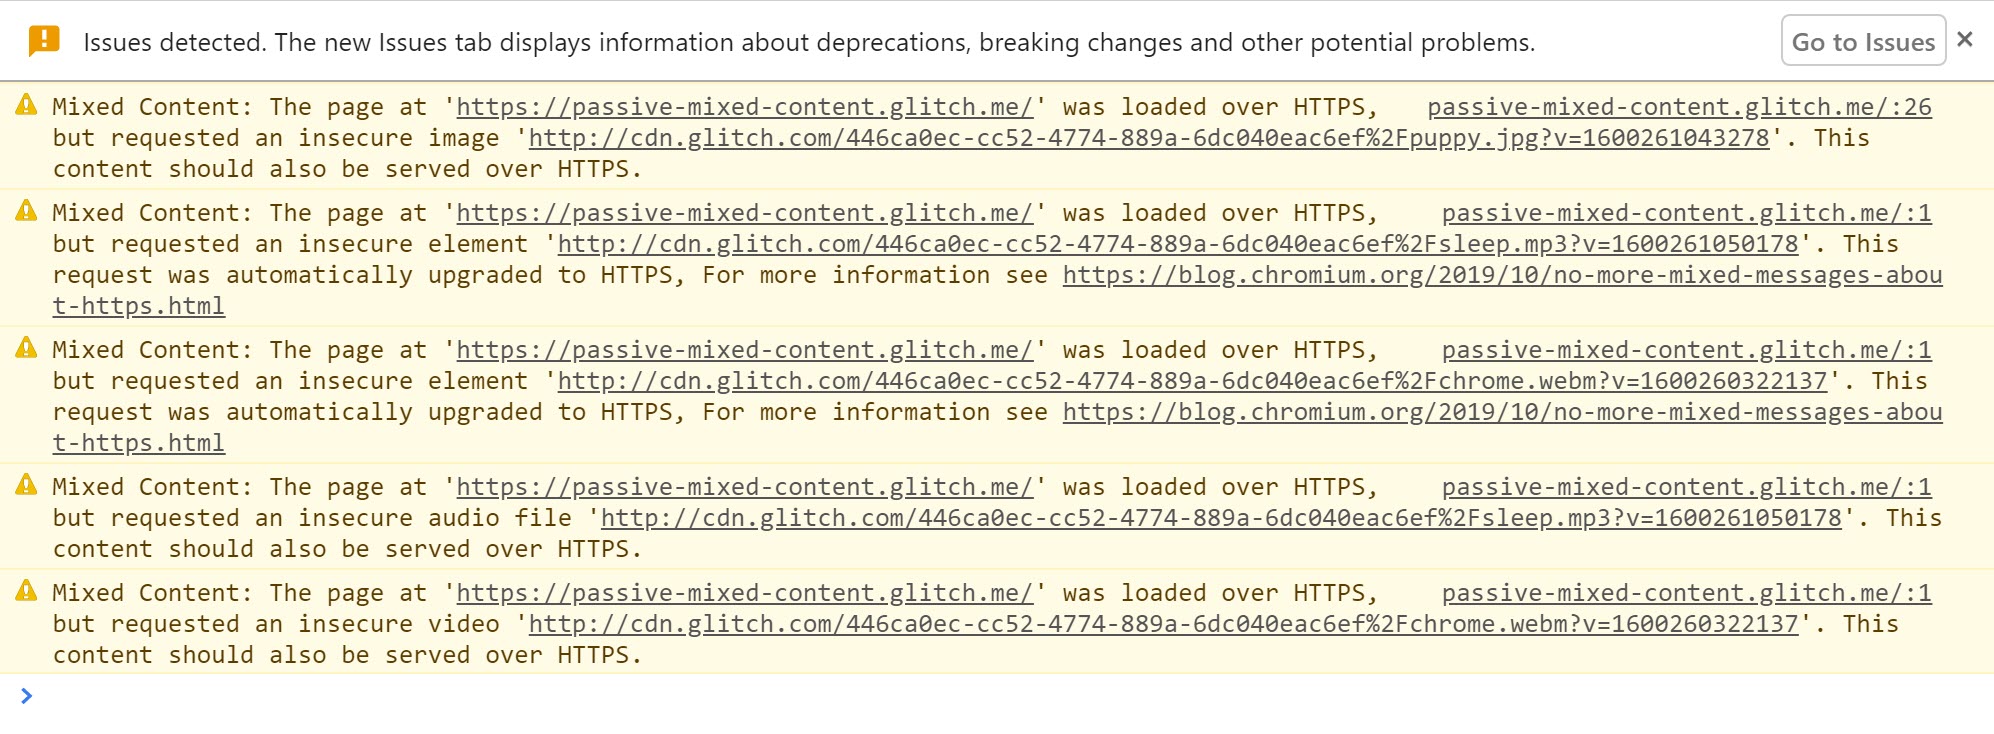 Chrome DevTools mostrando os avisos quando conteúdo misto é detectado e atualizado